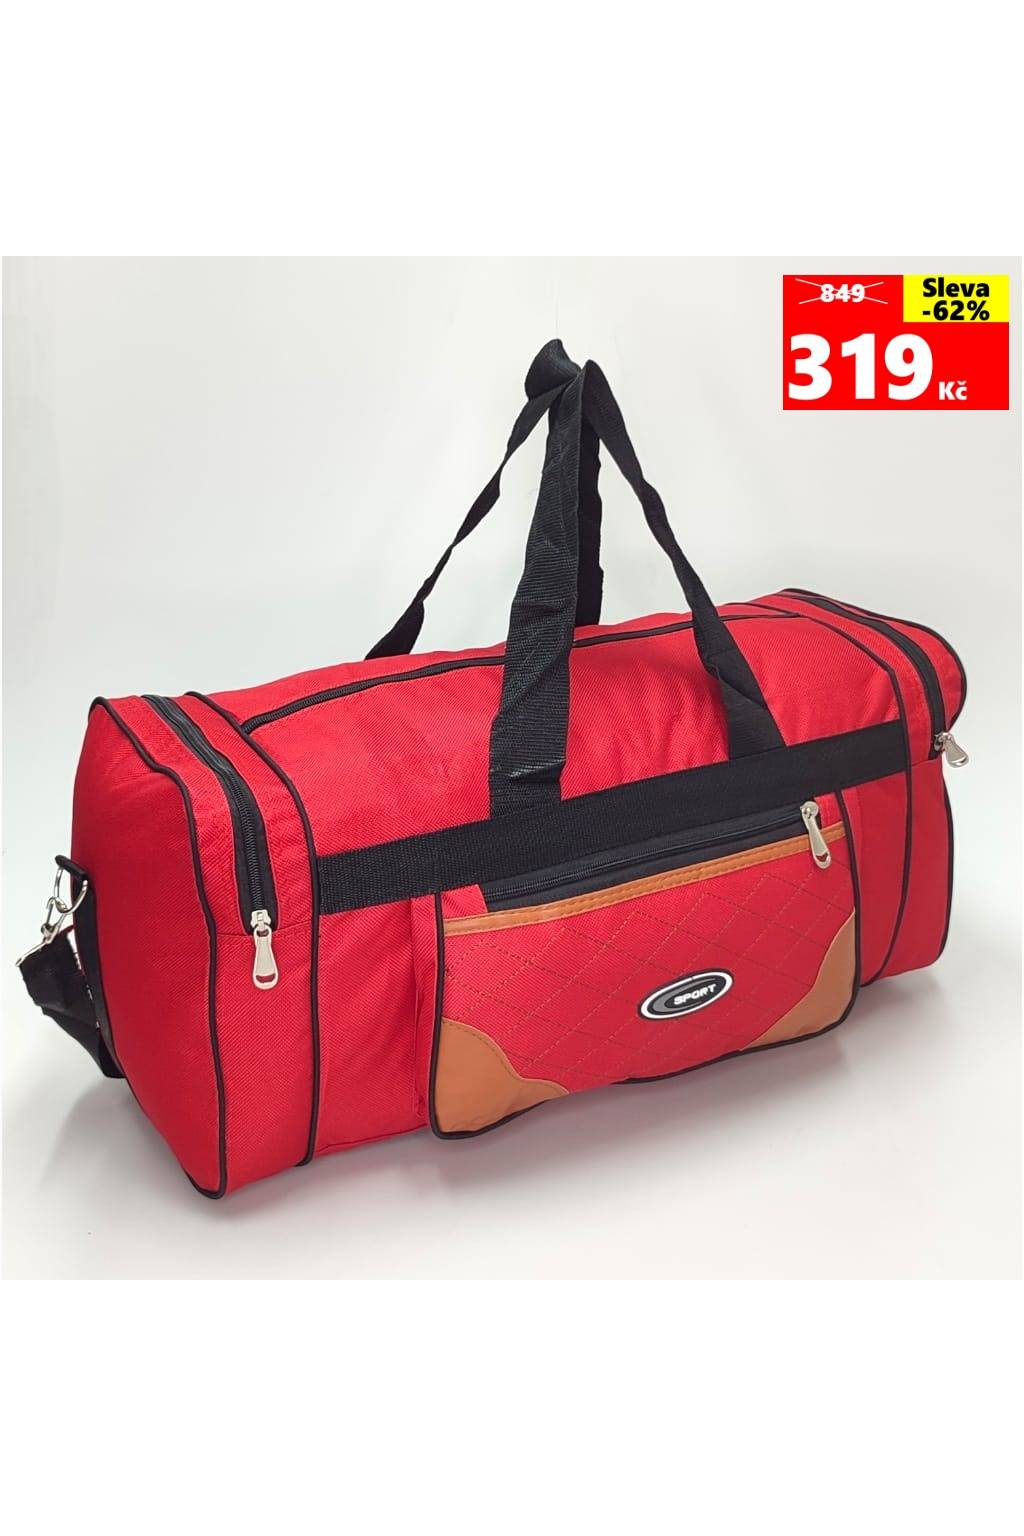 Cestovná taška 83355 červená www.kabelky vypredaj (12)